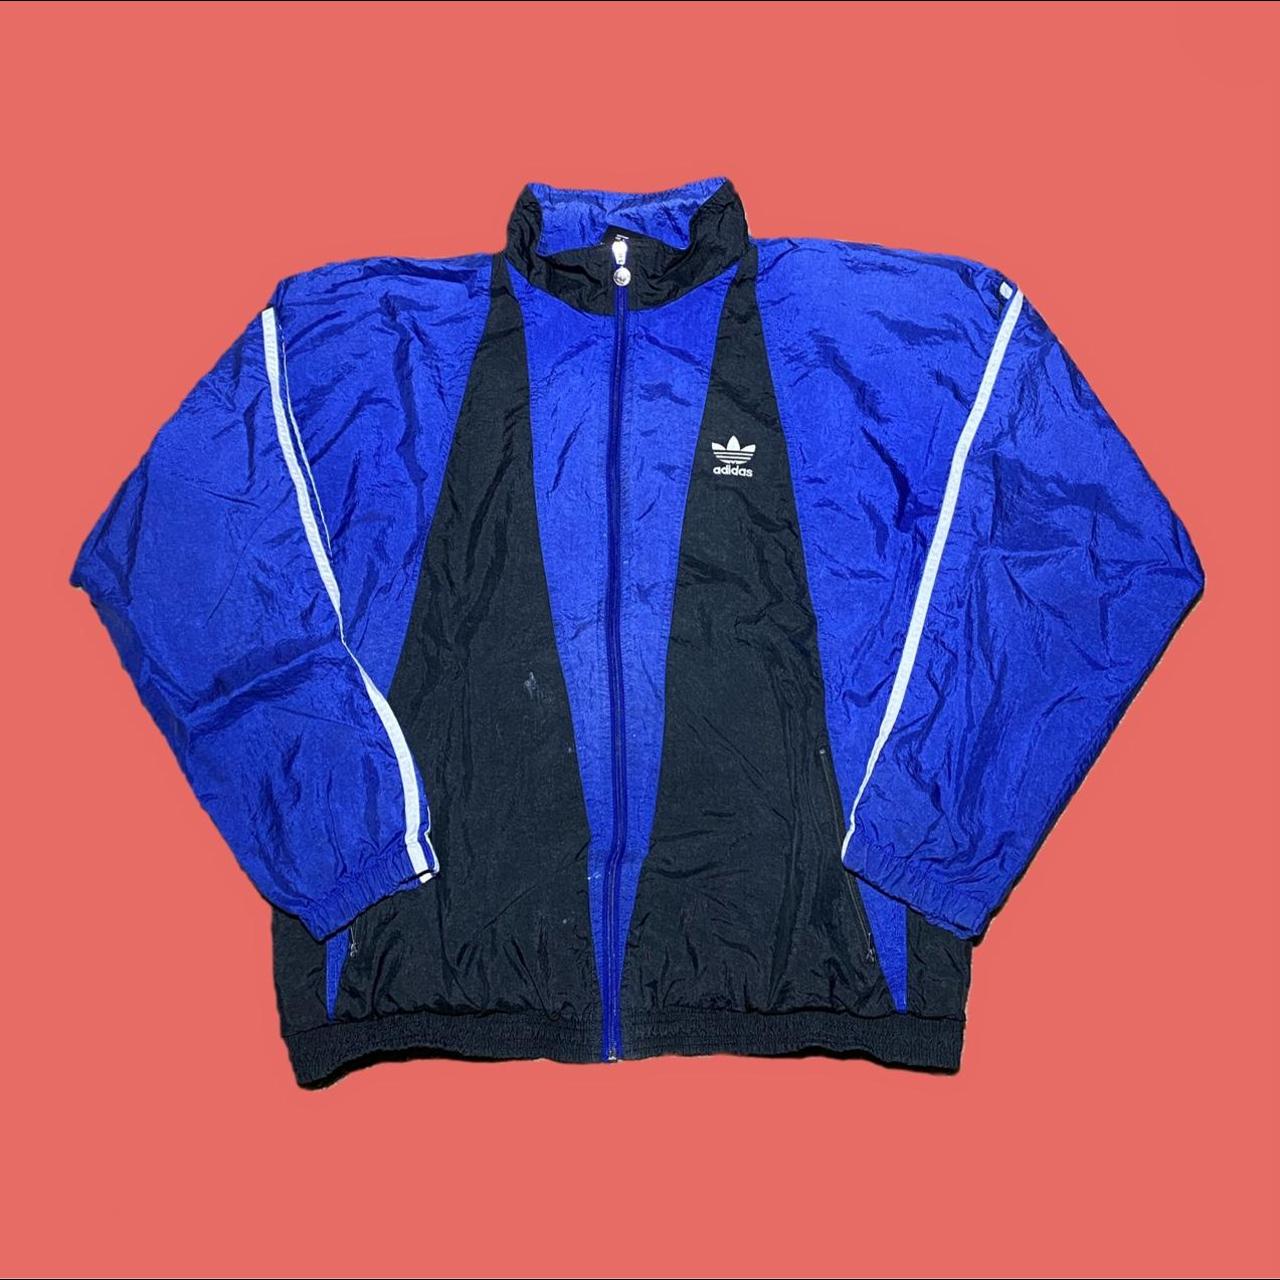 Adidas Men's Blue and Black Jacket | Depop